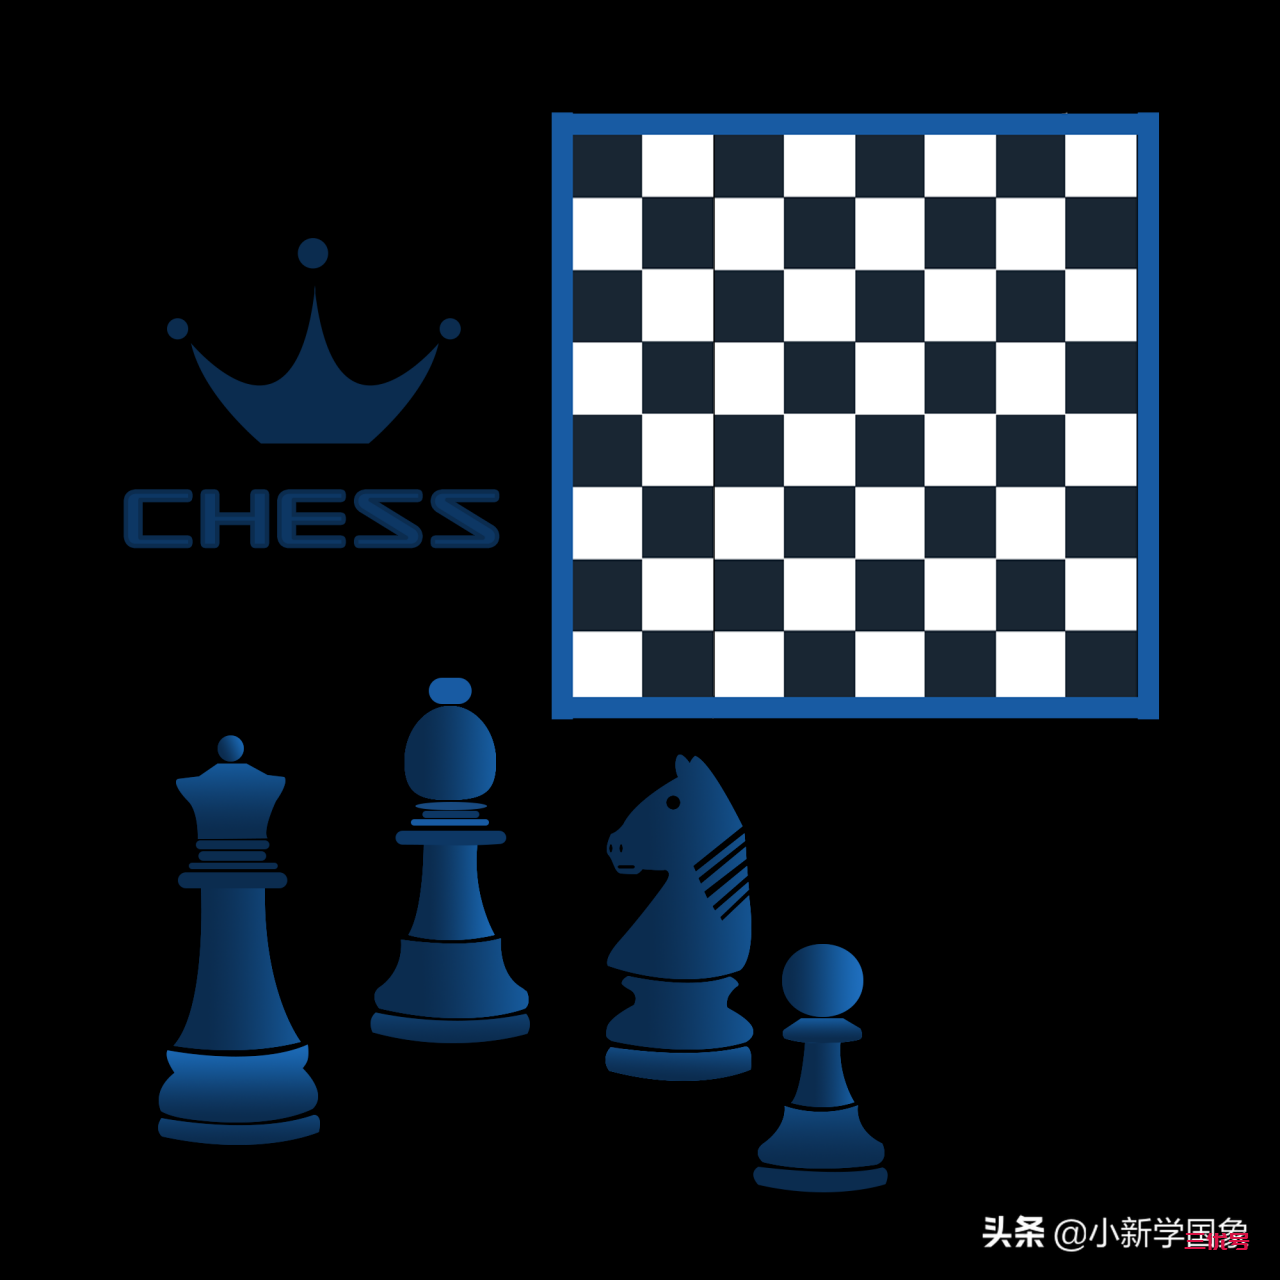 十分钟带你玩转国际象棋